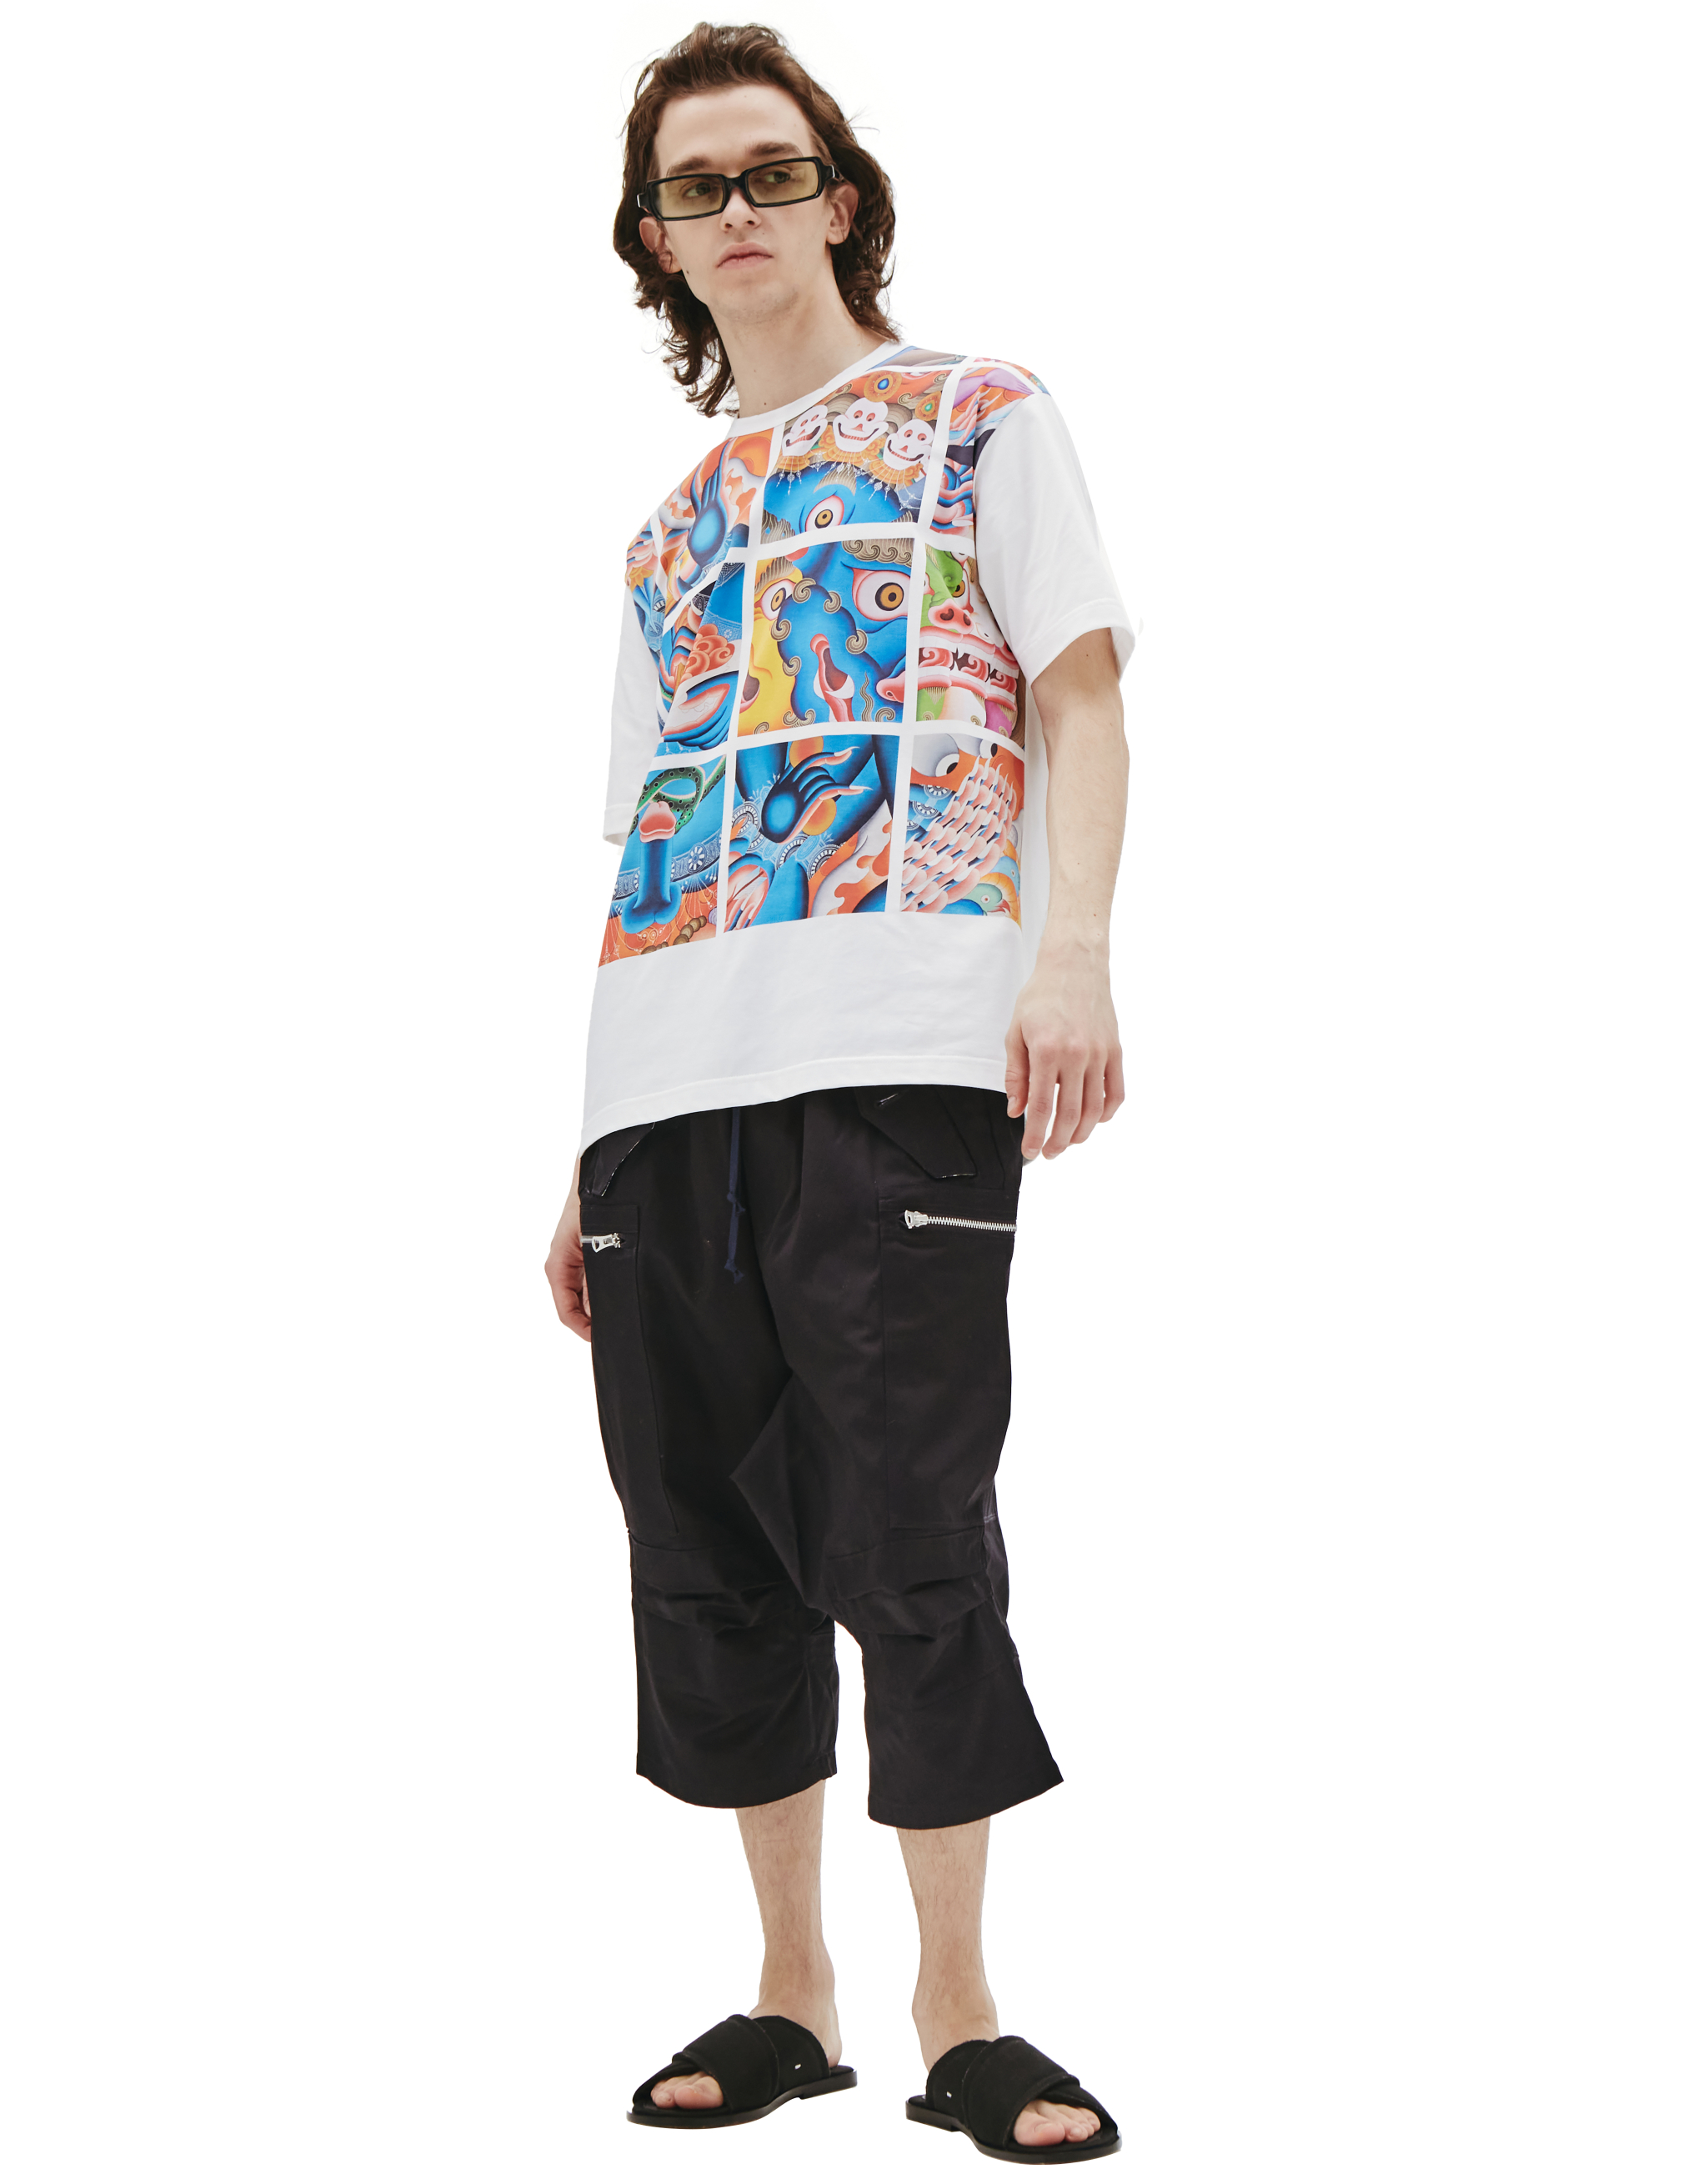 Хлопковая футболка с восточным принтом Junya Watanabe WI-T004-051-1, размер XL;L